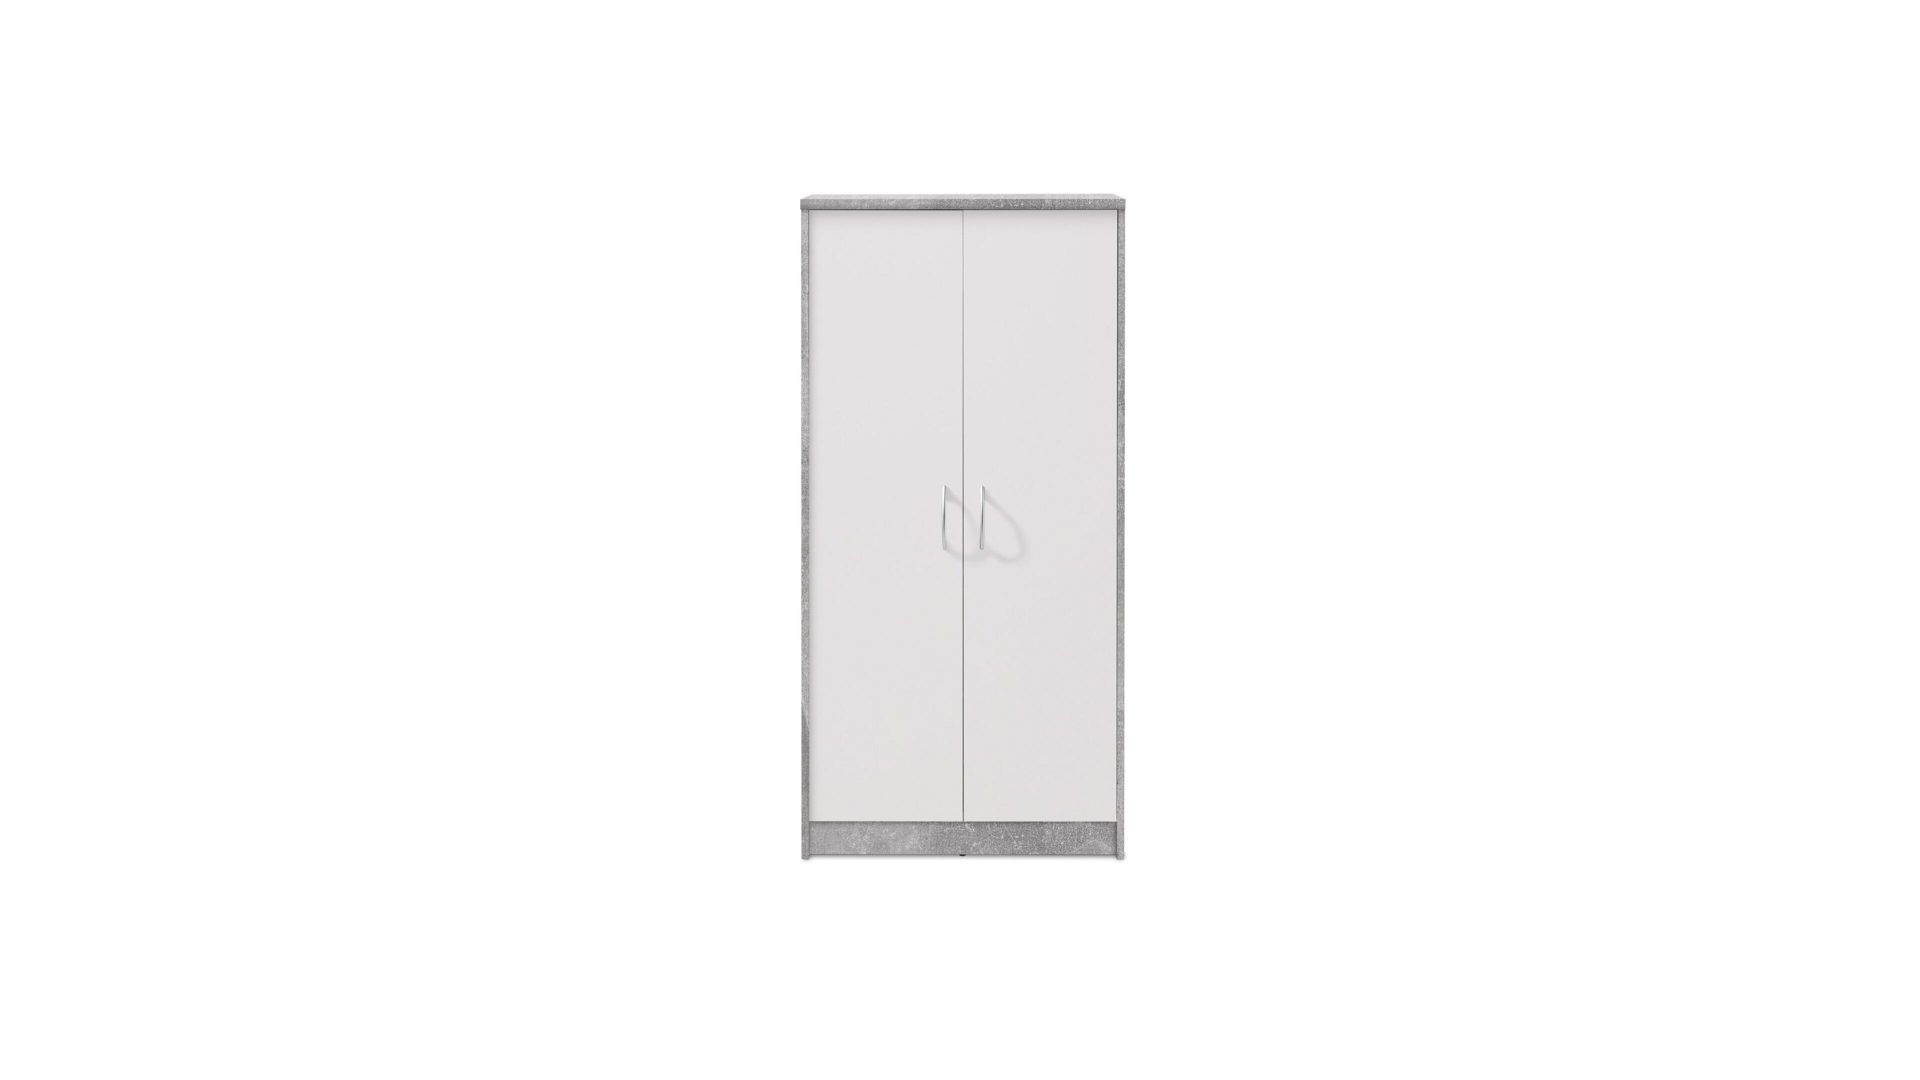 Aktenschrank Bega consult aus Holz in Grau Aktenschrank weiße & betonfarbene Kunststoffoberflächen – zwei Türen, Höhe ca. 148 cm